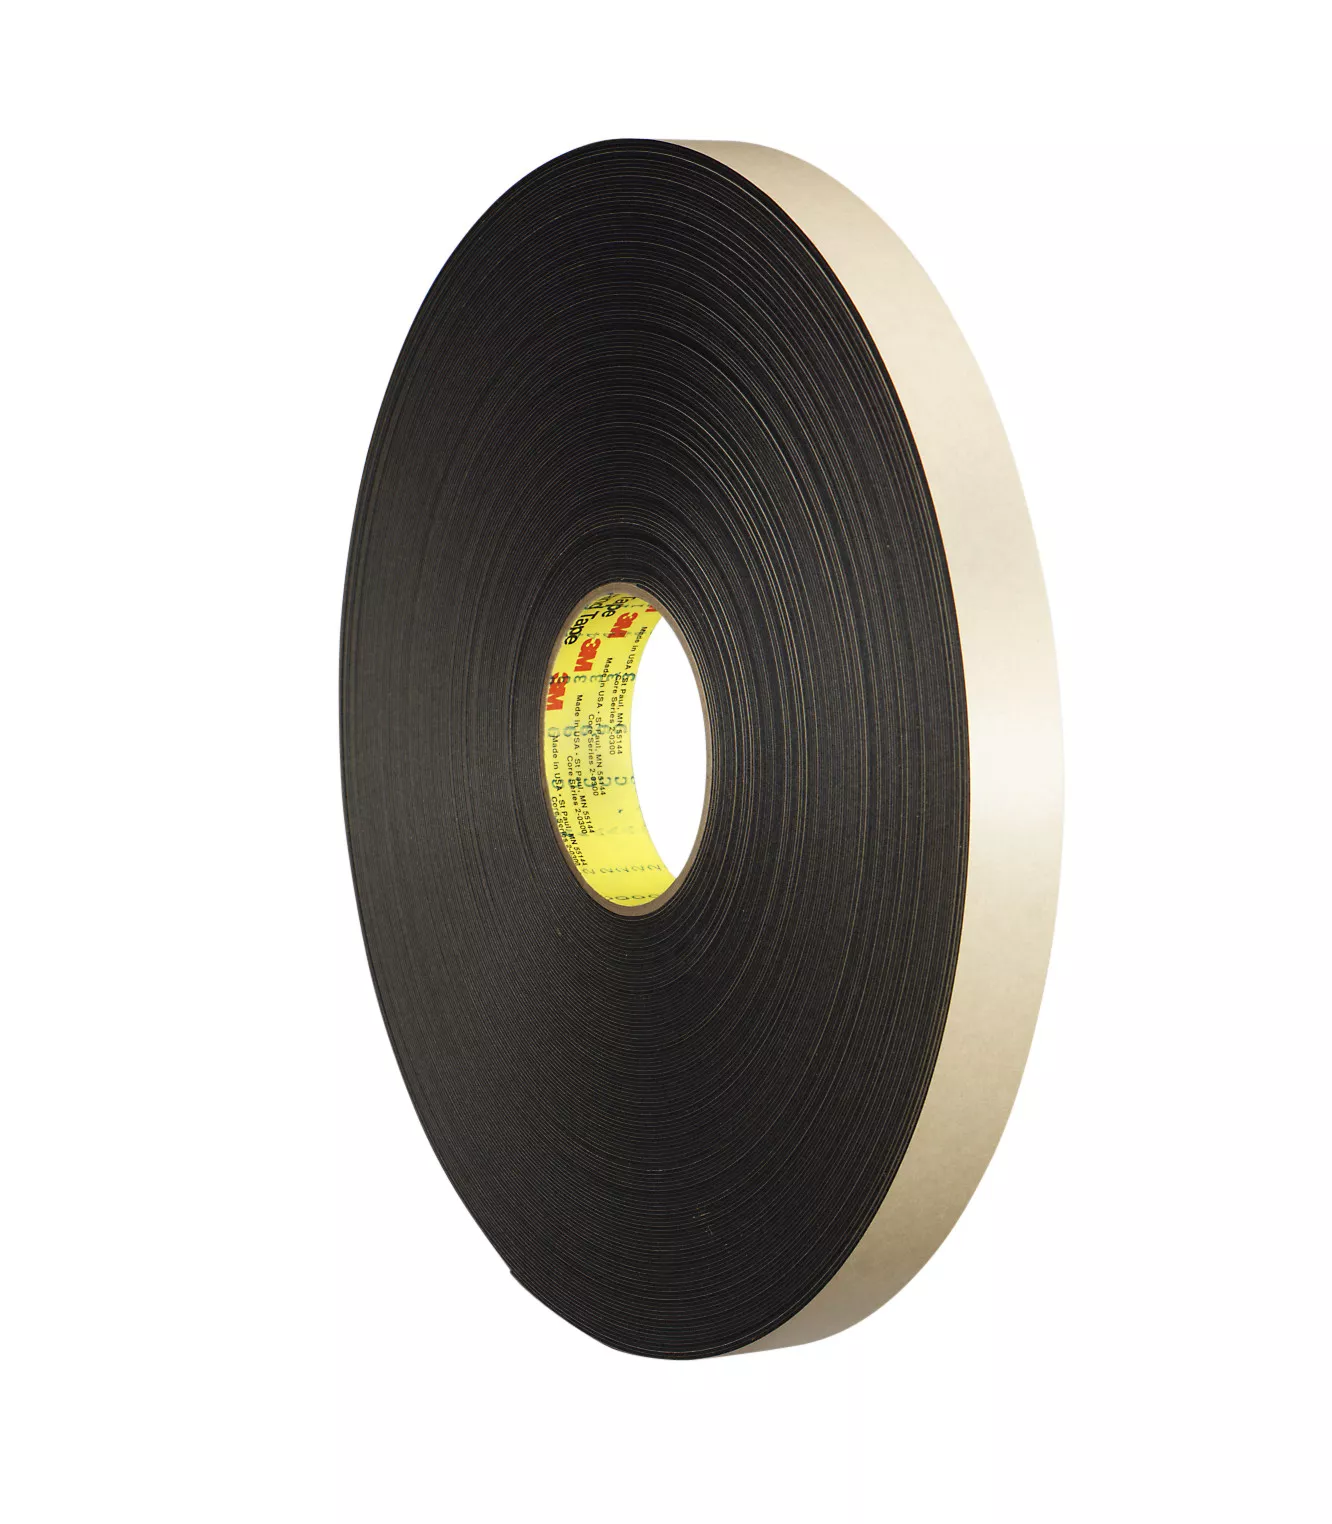 3M™ Double Coated Polyethylene Foam Tape 4492B, Black, 48 in x 72 yd, 31
mil, 1 roll per case